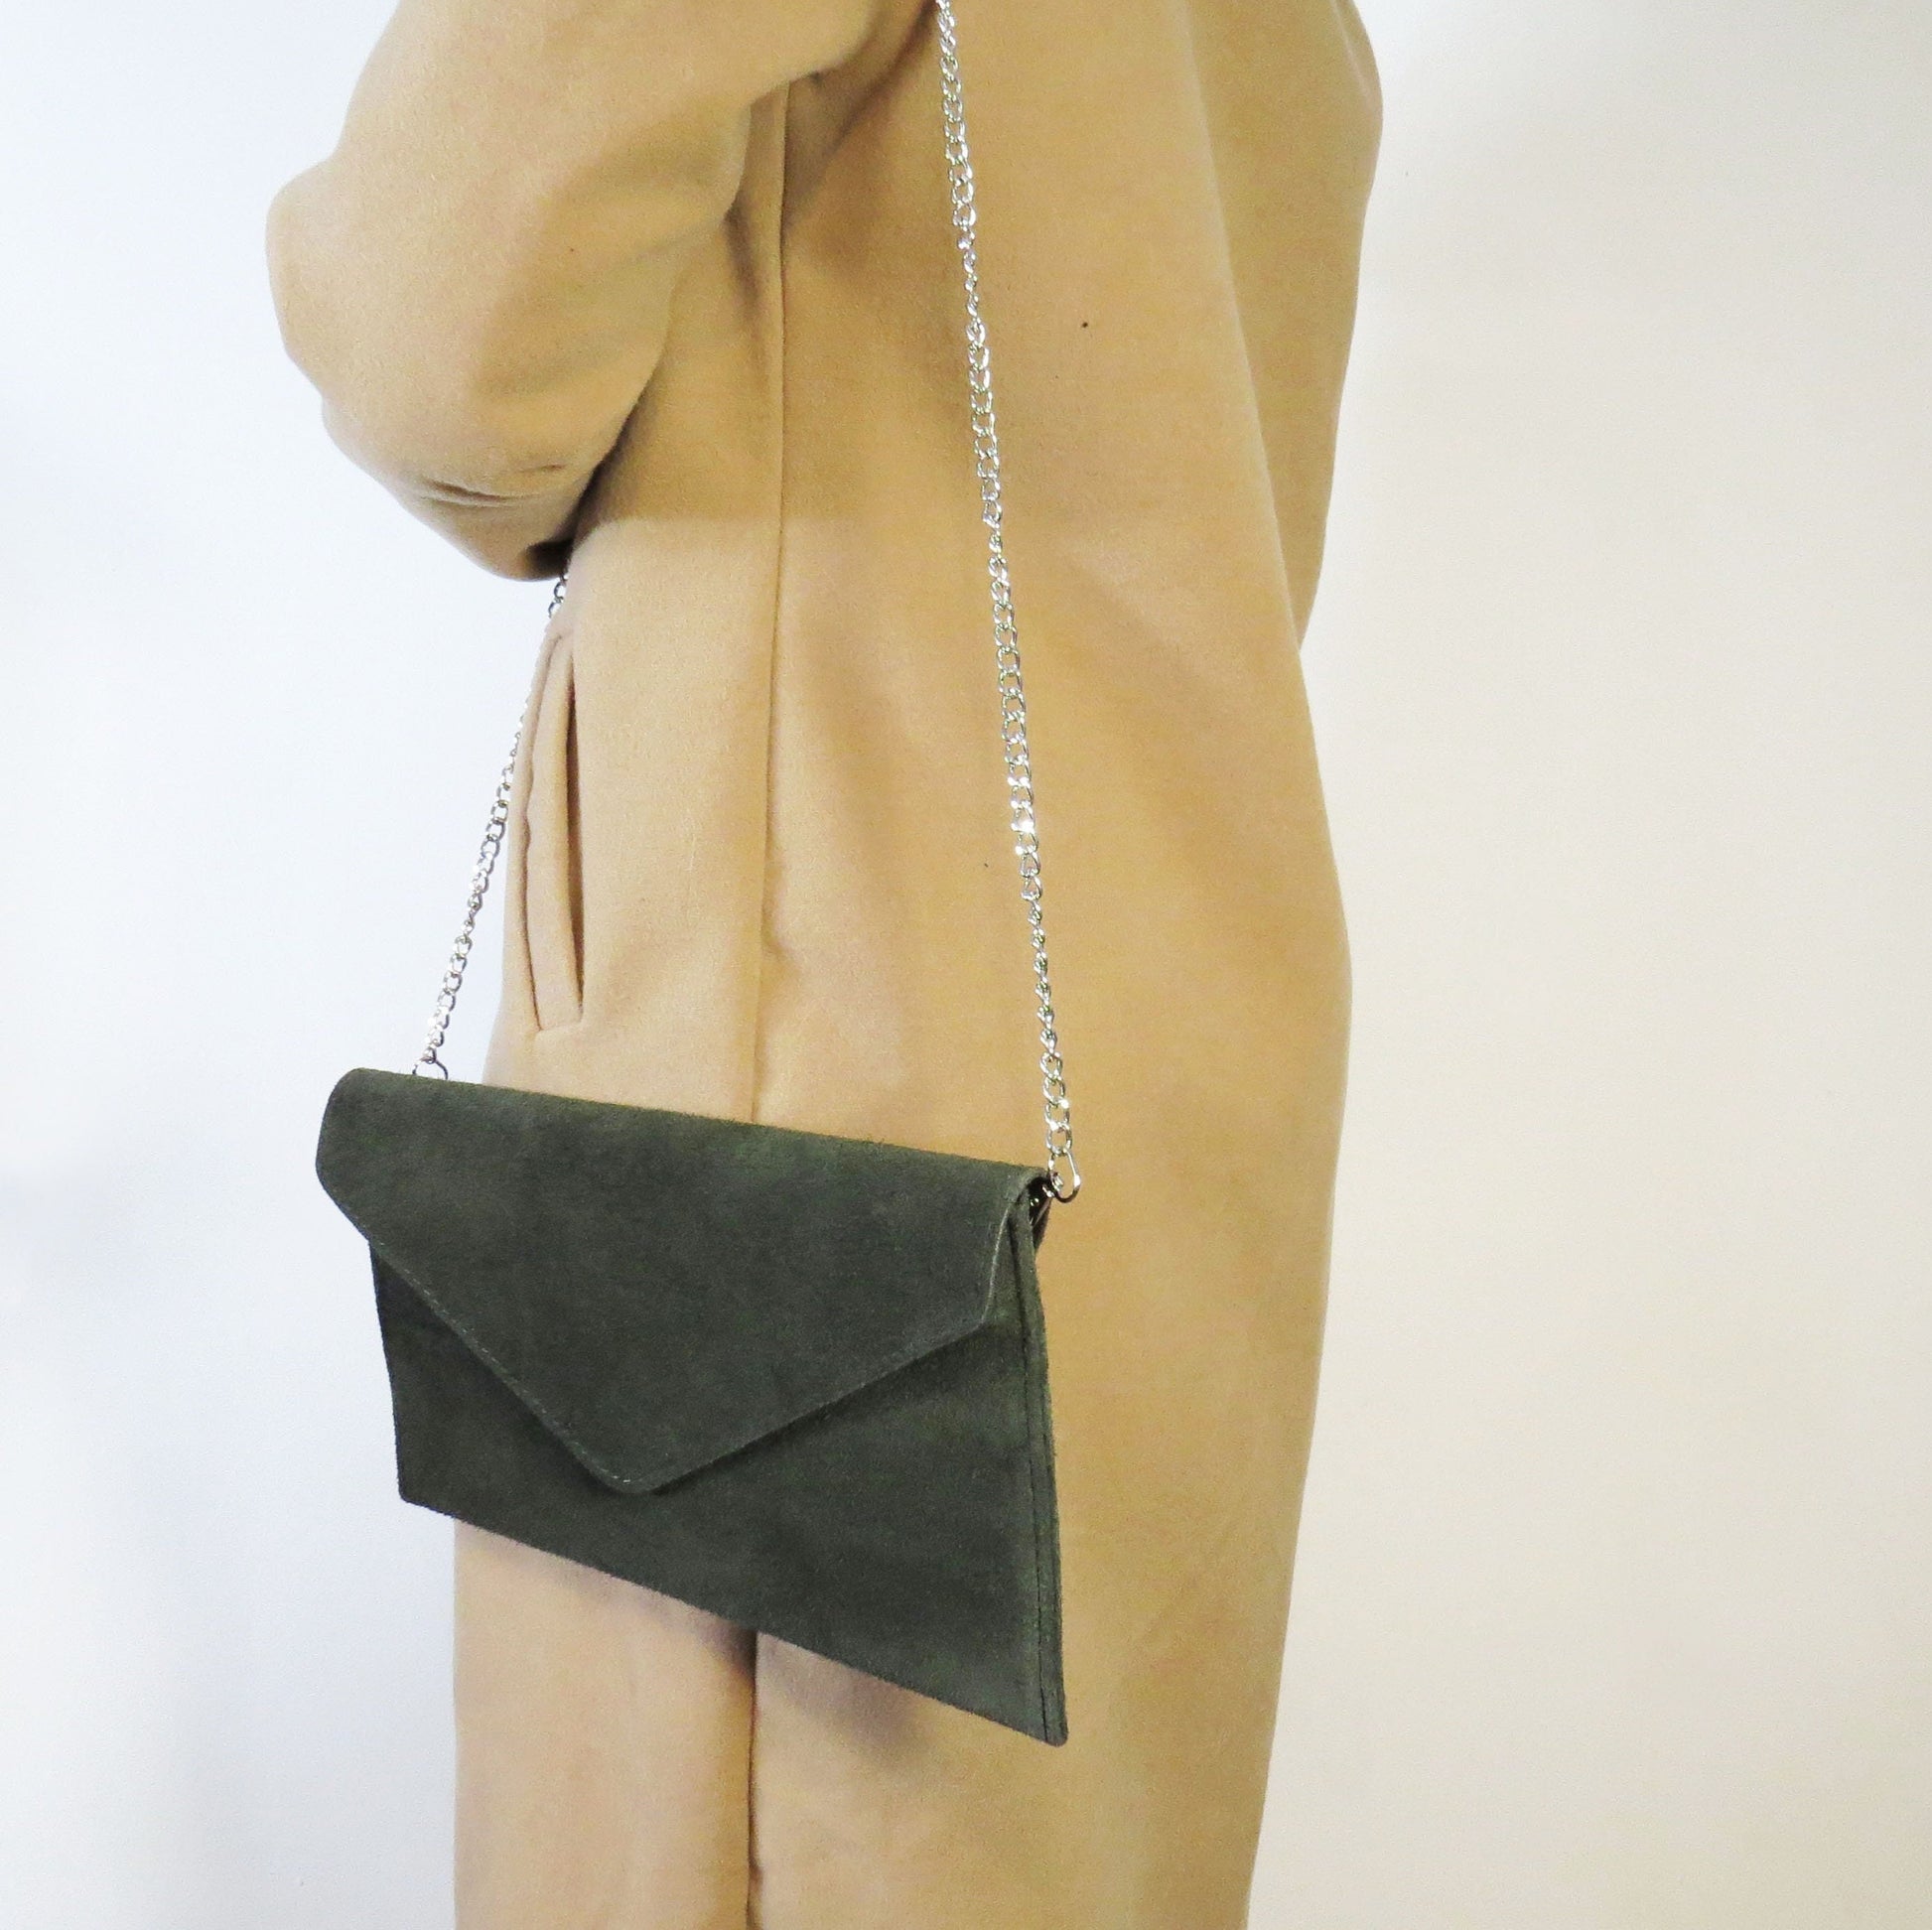 Dark Green envelope clutch bag with chain strap